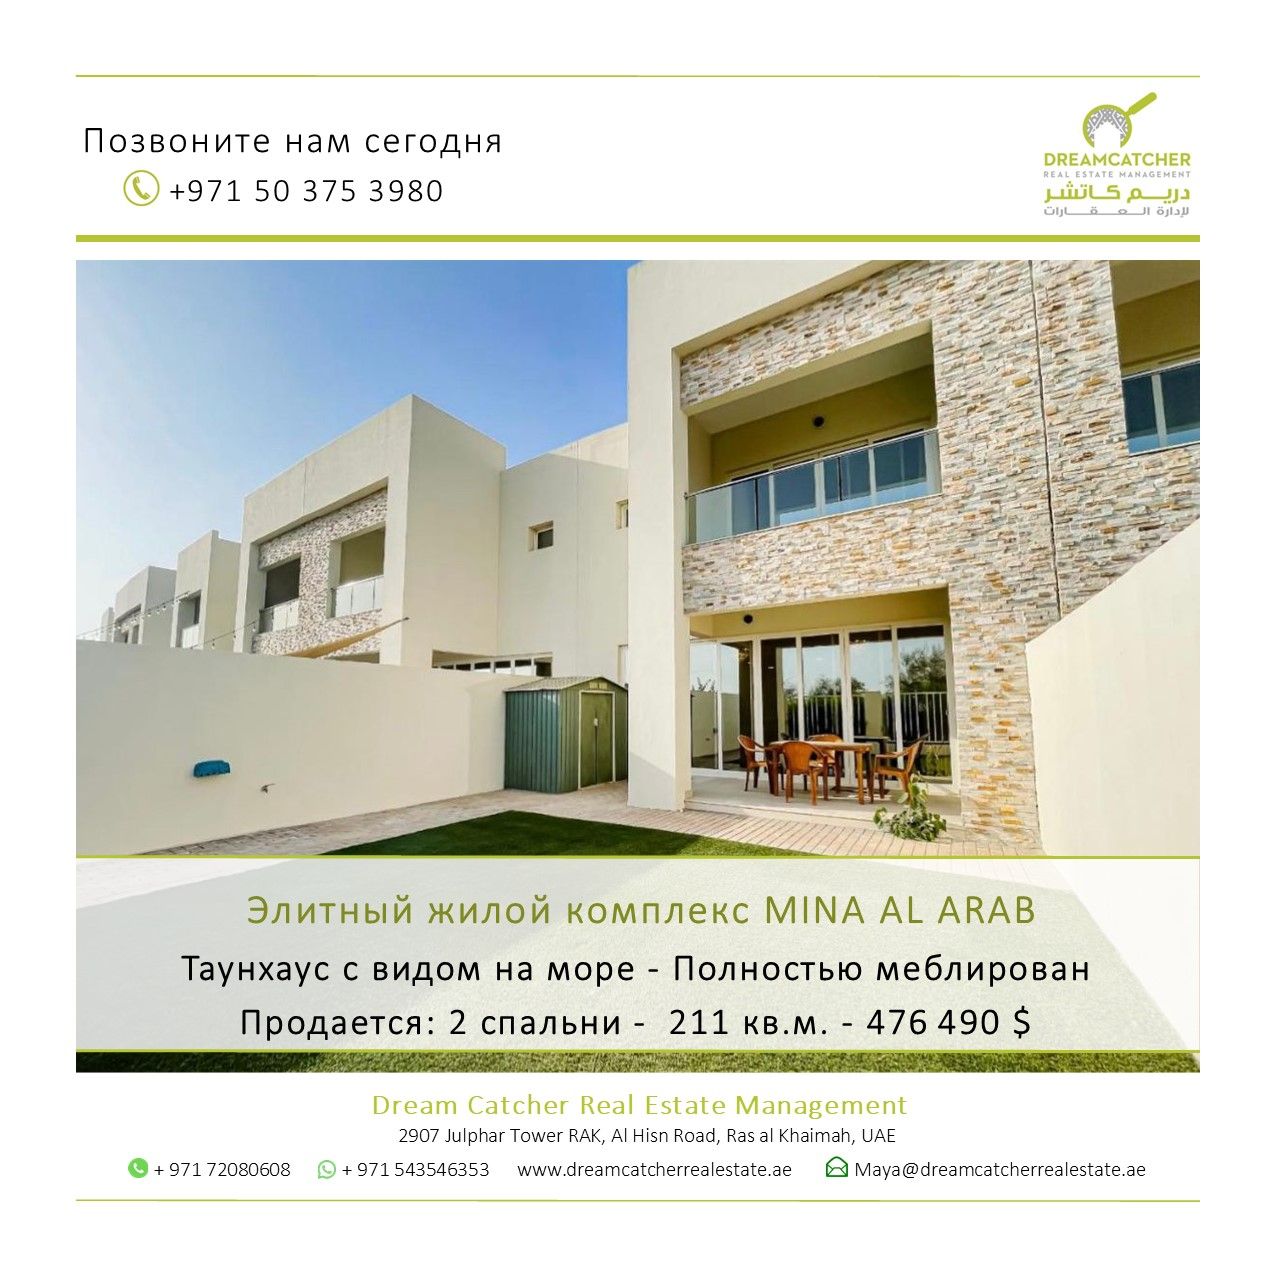 Villa in Ras al-Khaimah, UAE, 211 sq.m - picture 1